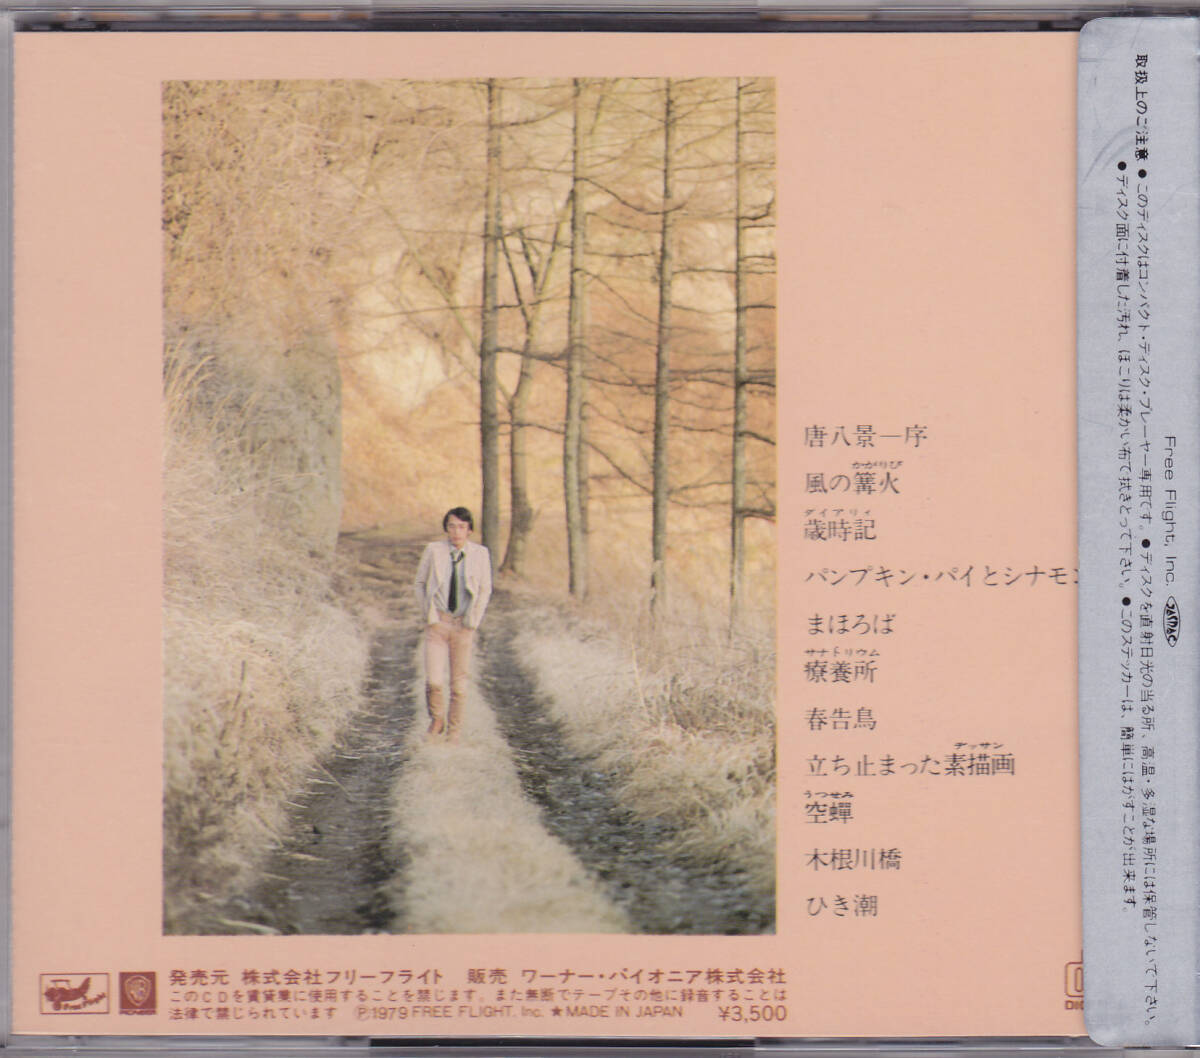 CD さだまさし - 夢供養 - 旧規格 35XF-5 11A1 3500円盤 税表記なし 銀シール帯_画像2